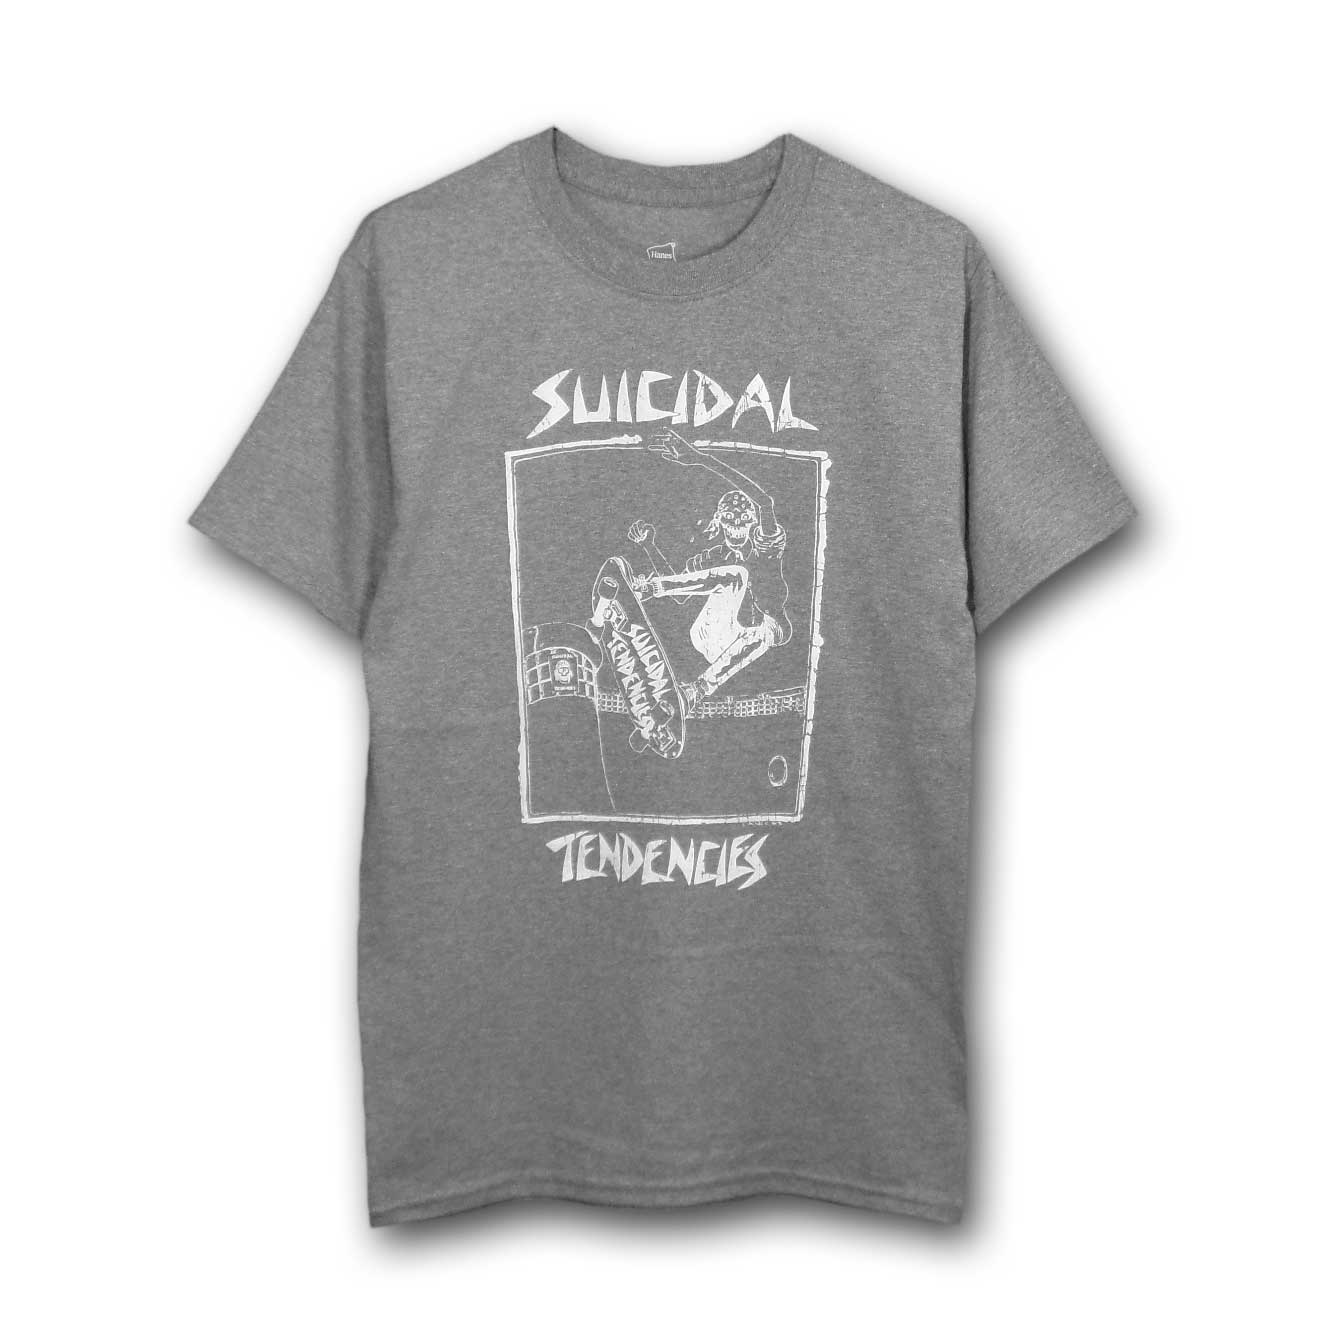 オールドTシャツ スイサイダル SUICIDAL TENDENCIES - Tシャツ